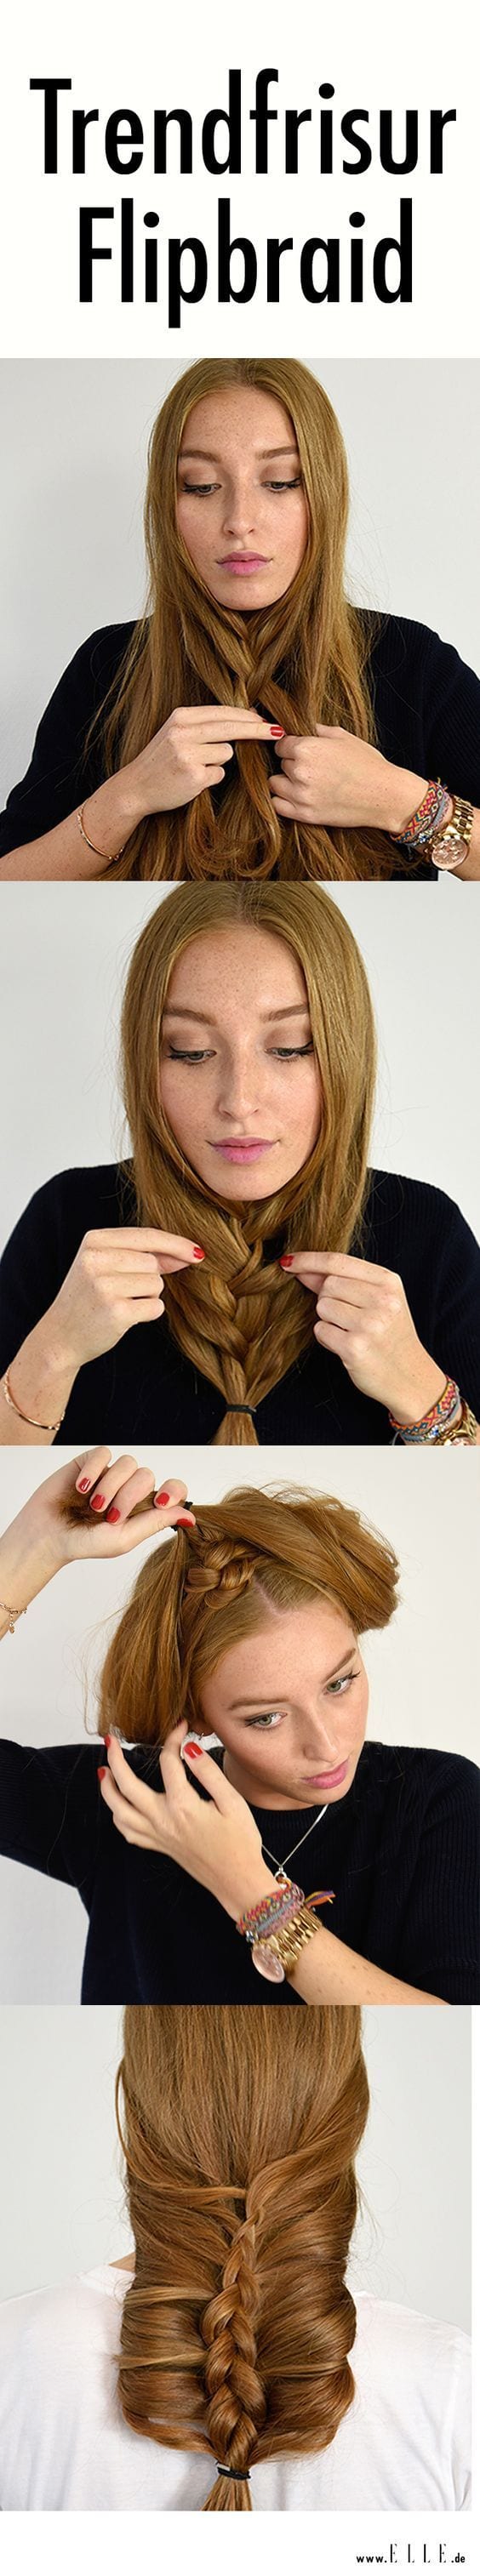 [ad_1]

Dieser Hairstyle wird derzeit im Internet mega gehyped: Wir erklären, wie du den Flip Braid ganz einfach in 5 Schritten nachmachen kannst ► auf ELLE.de!
Source by PCVroegop
[ad_2]
			
			…